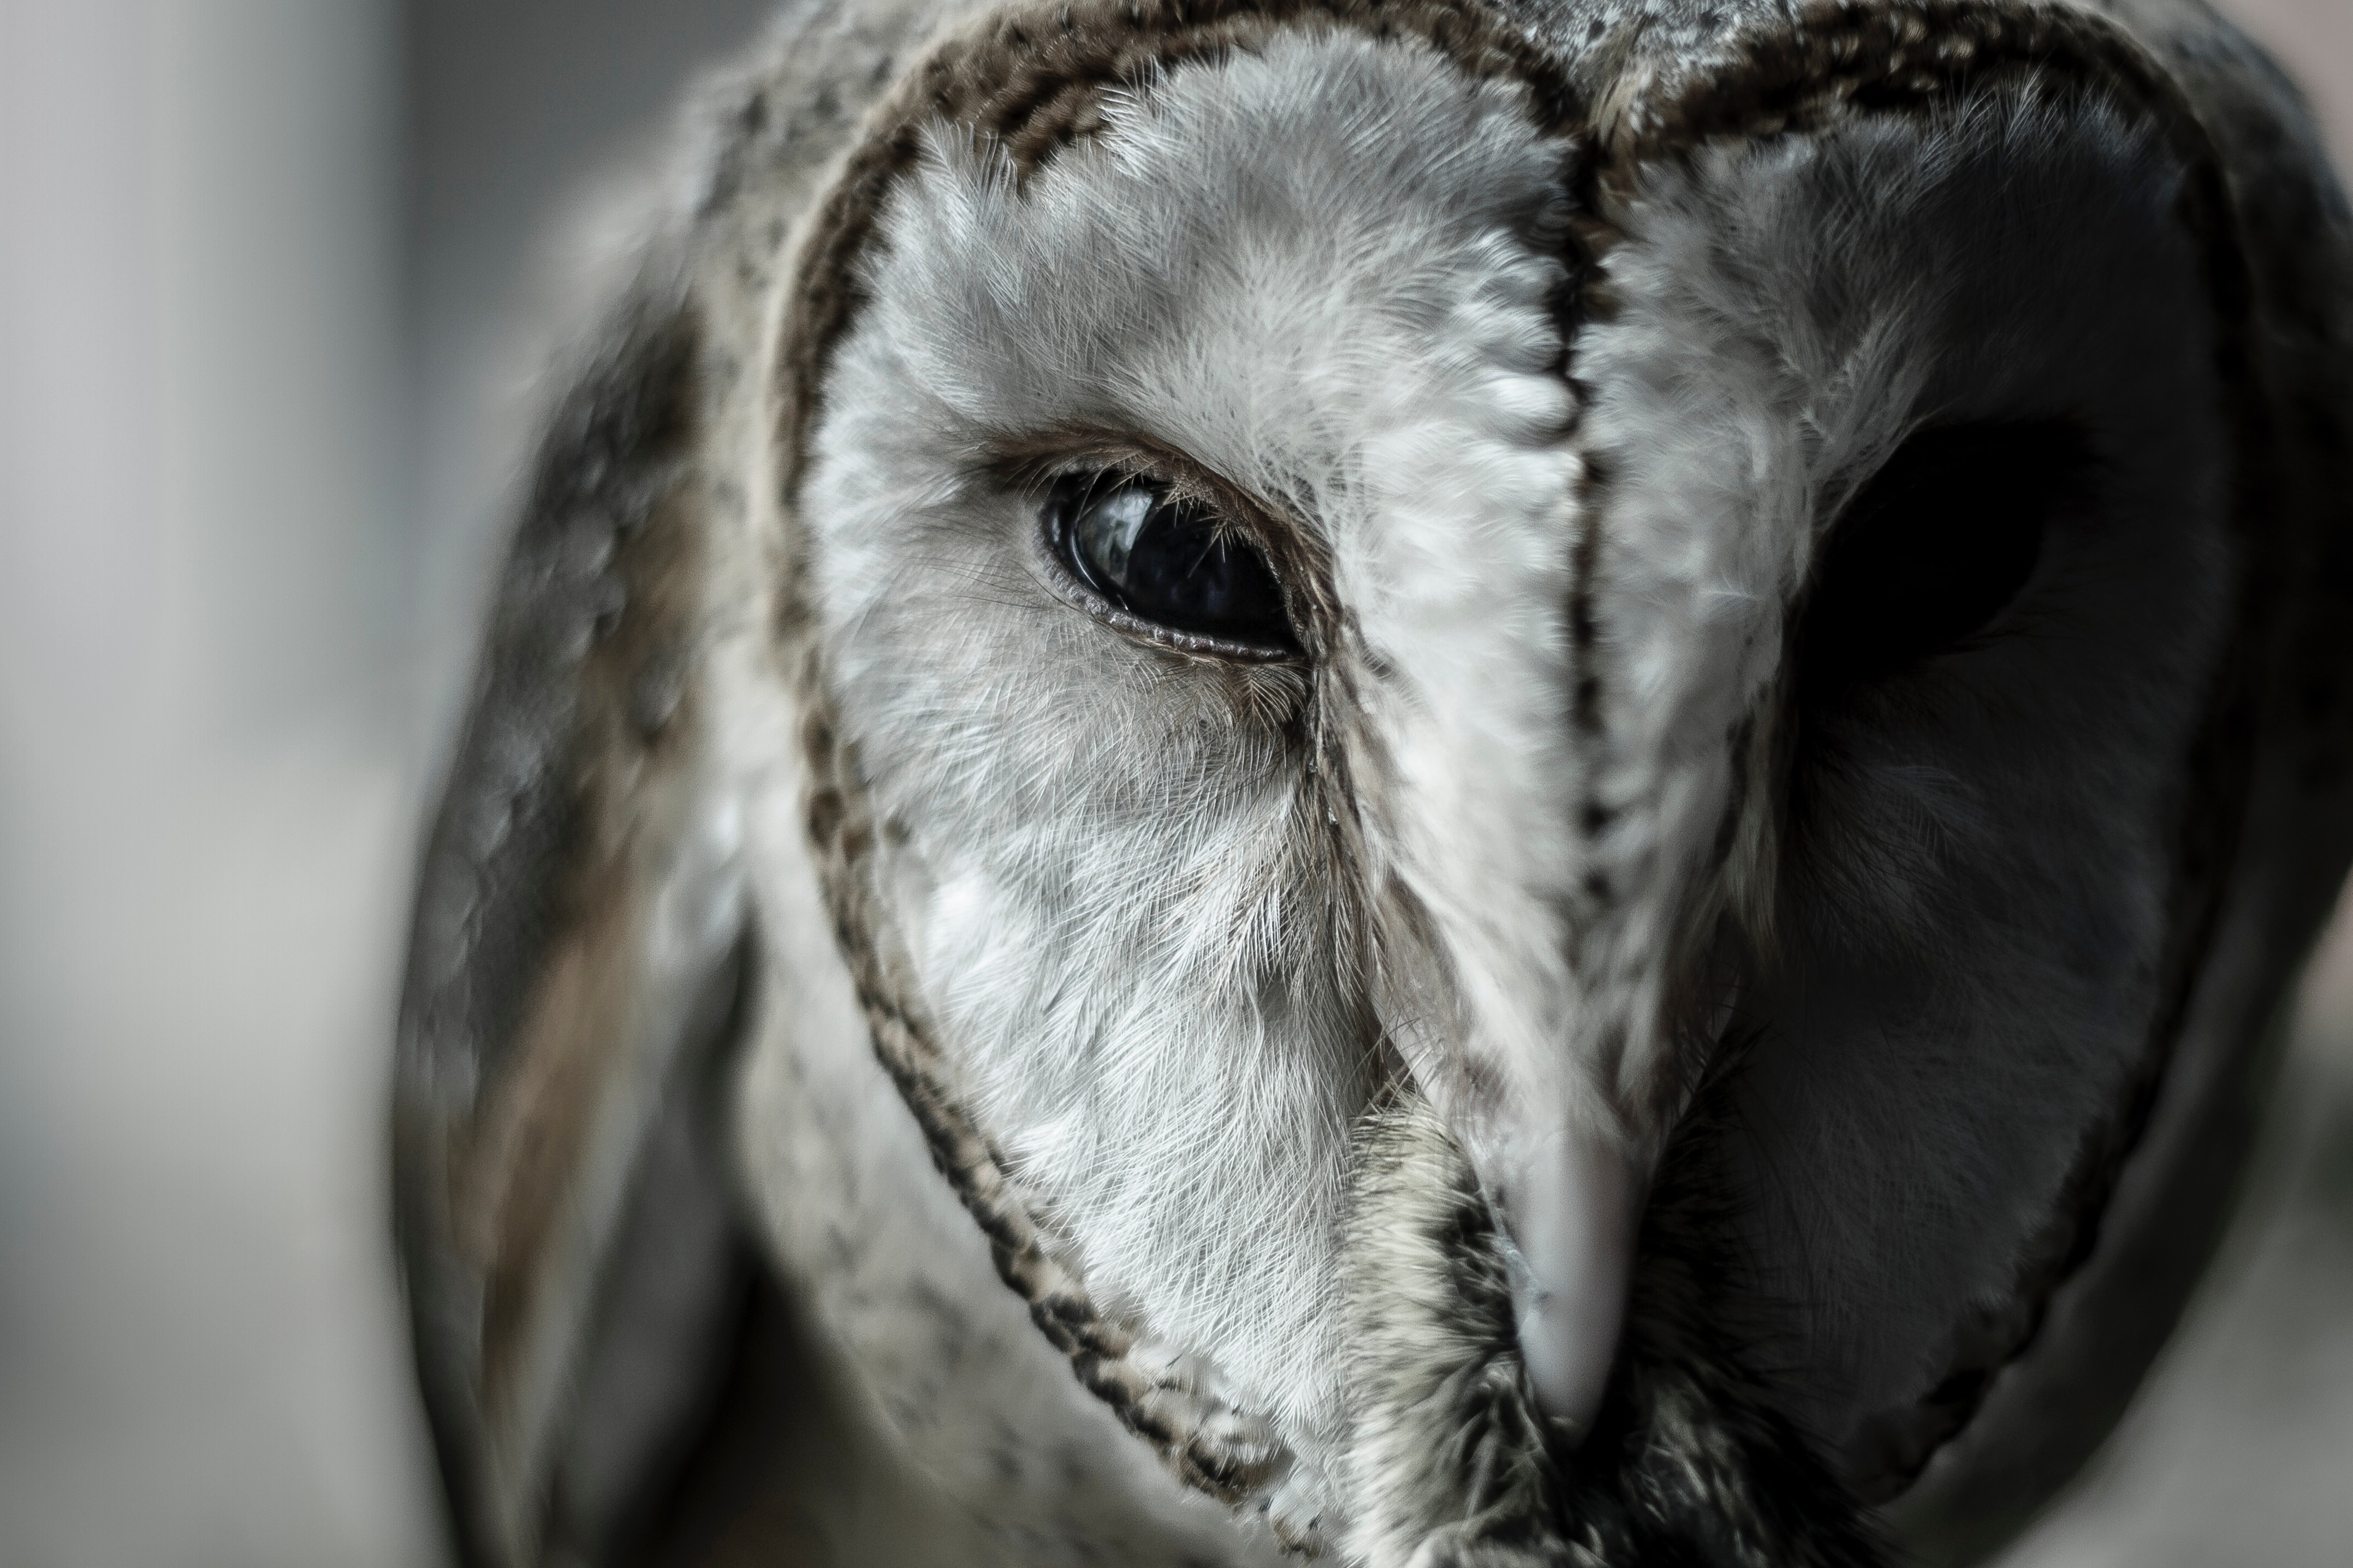 Close-up photo of an owl